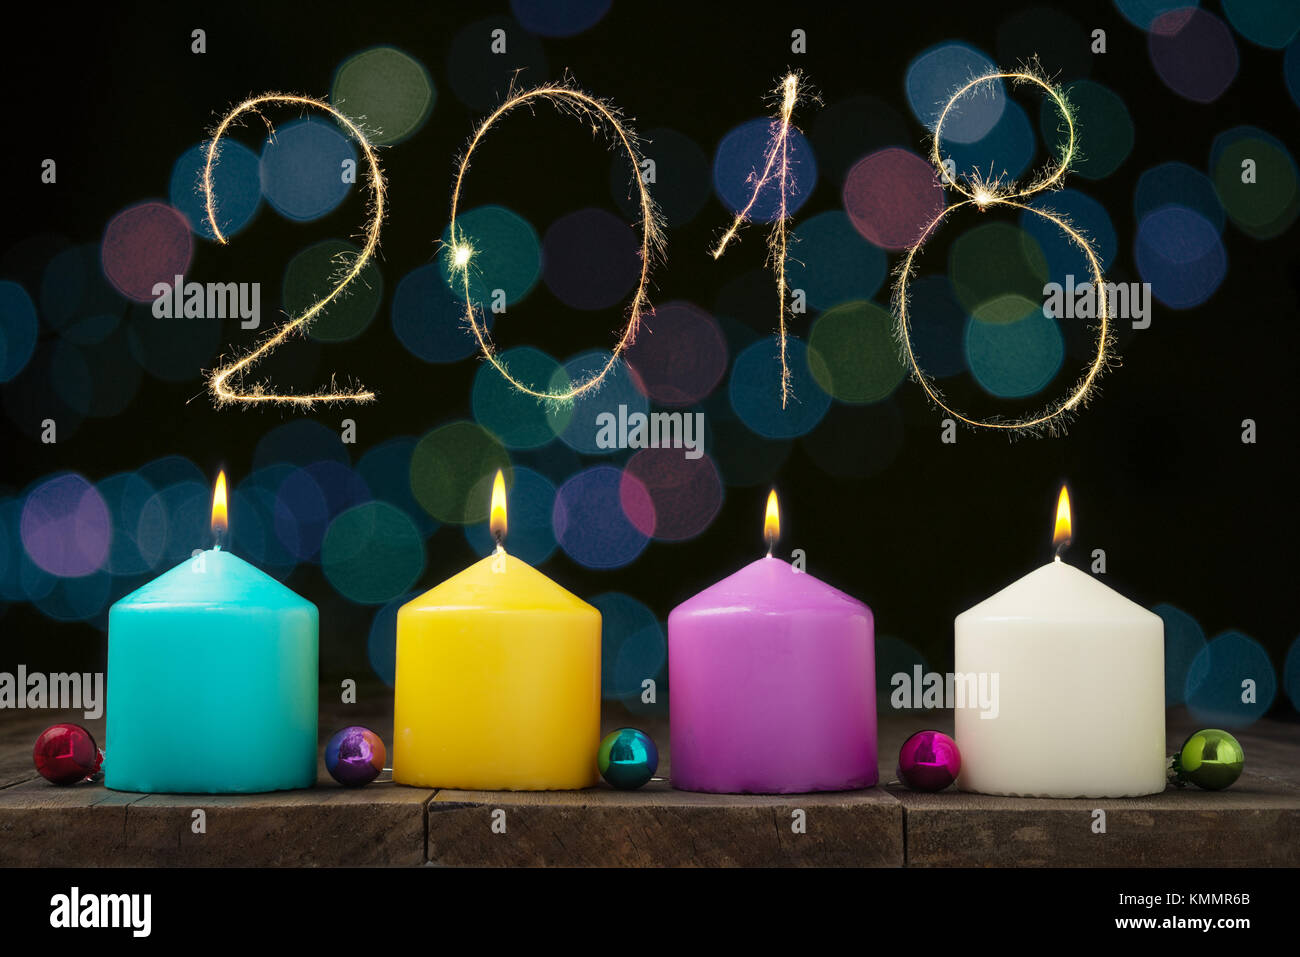 Multicolore di candele accese con bokeh e cifre 2018 su sfondo nero.Concetto di anno nuovo e xmas Foto Stock